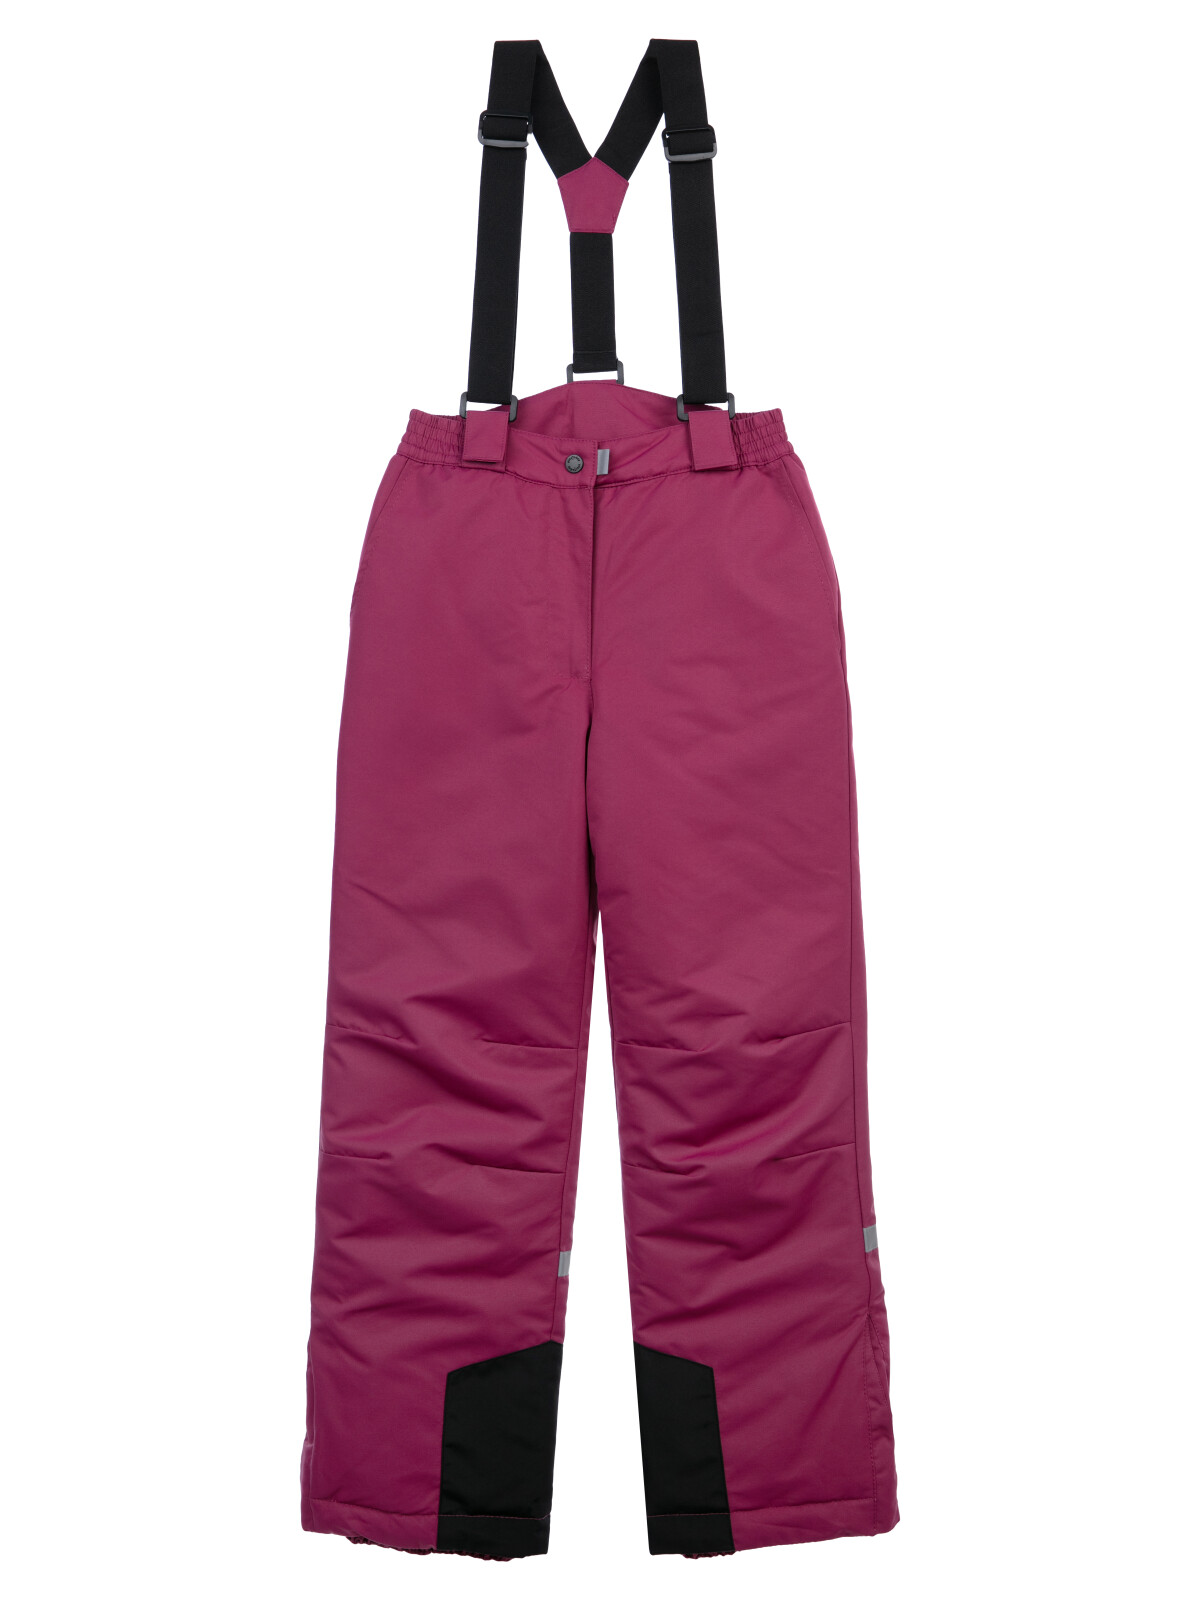 Брюки текстильные с полиуретановым покрытием для девочек PlayToday, бордовый, 152